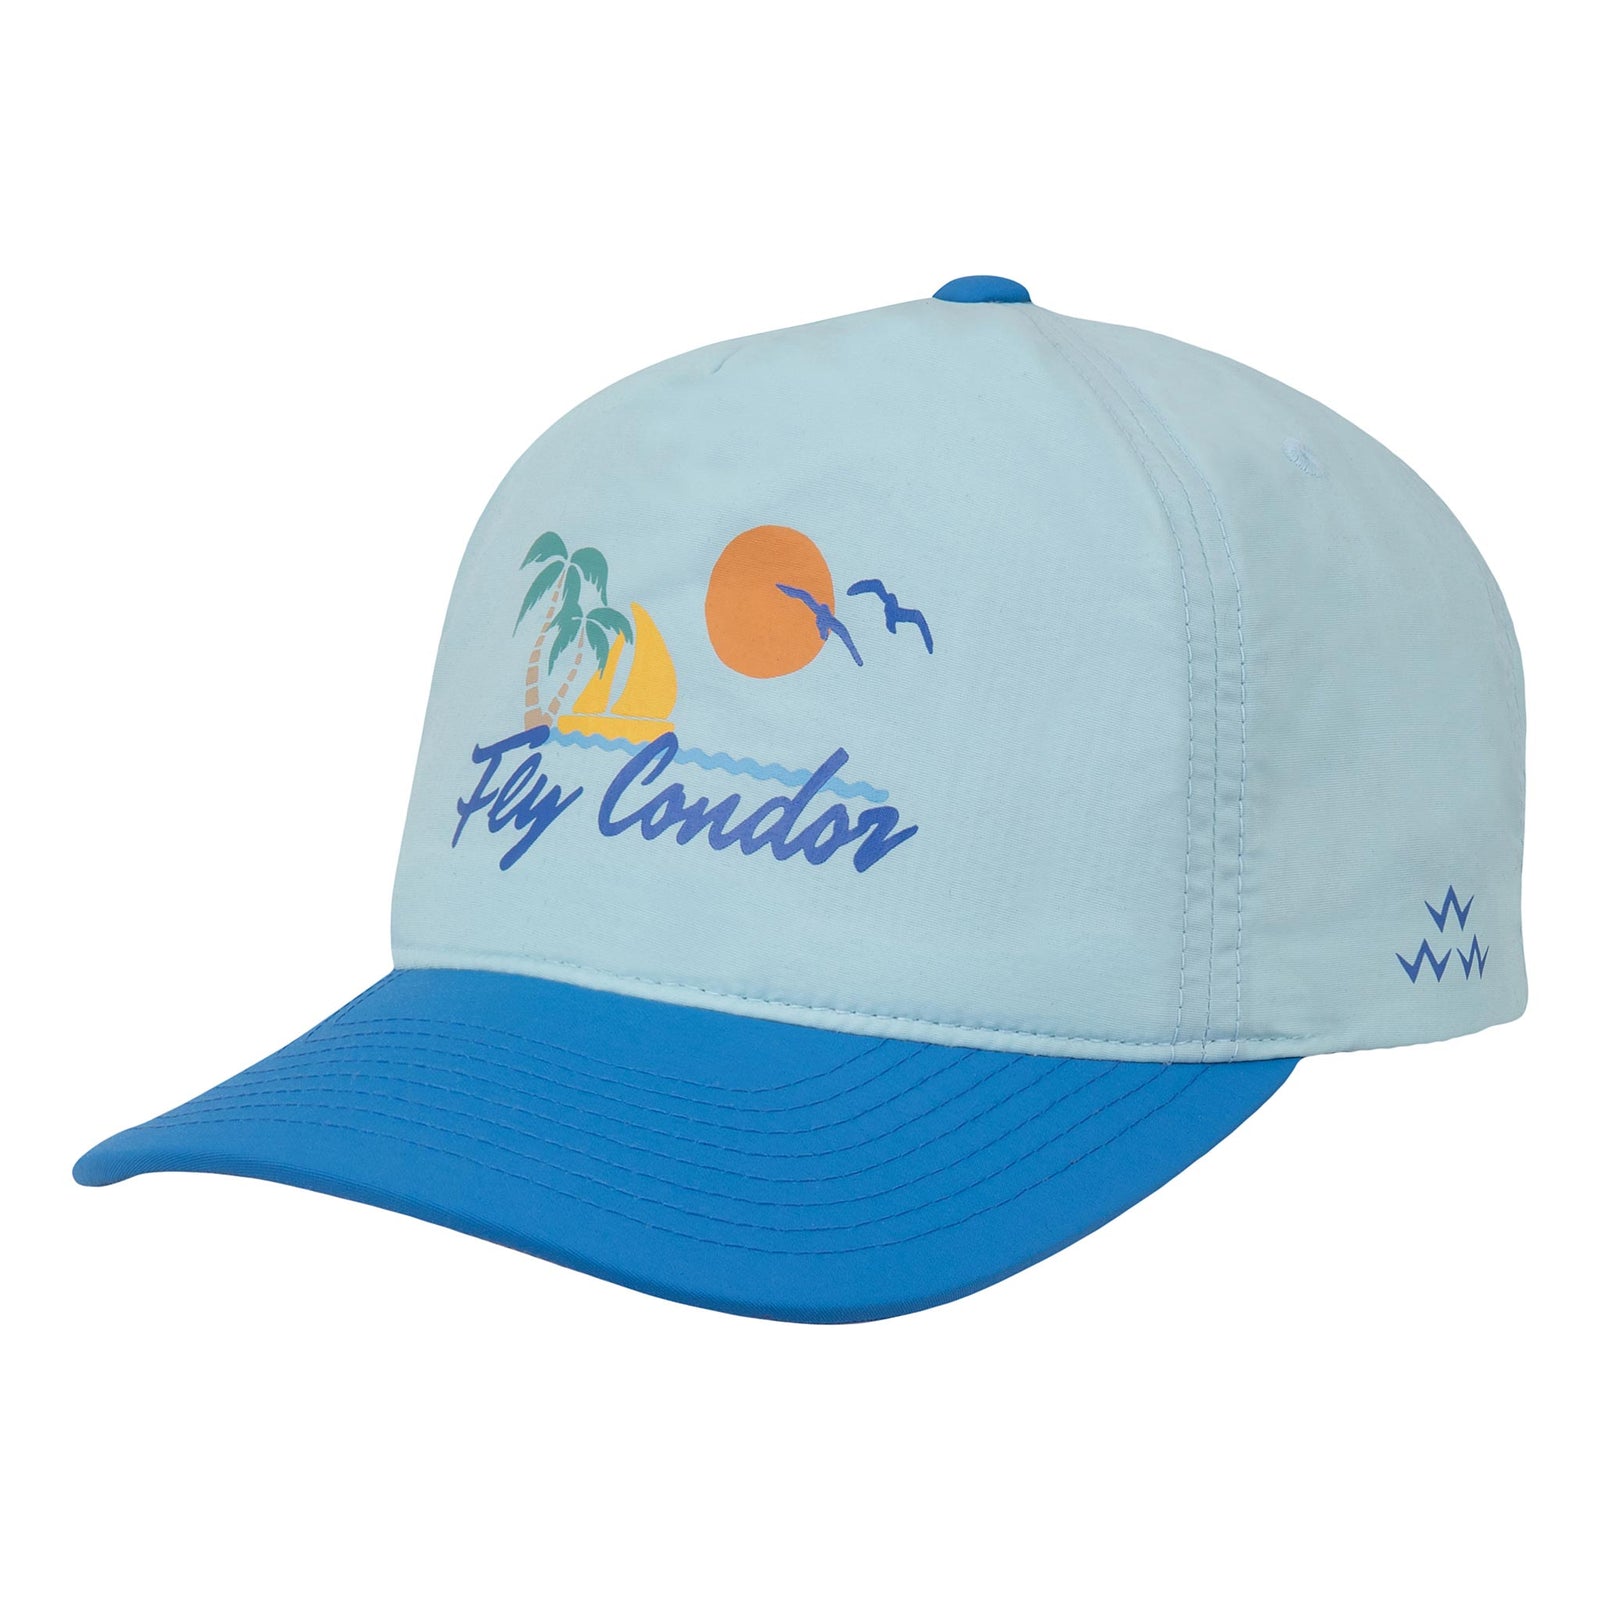 Shop Golf Hats & Caps | Birds of Condor